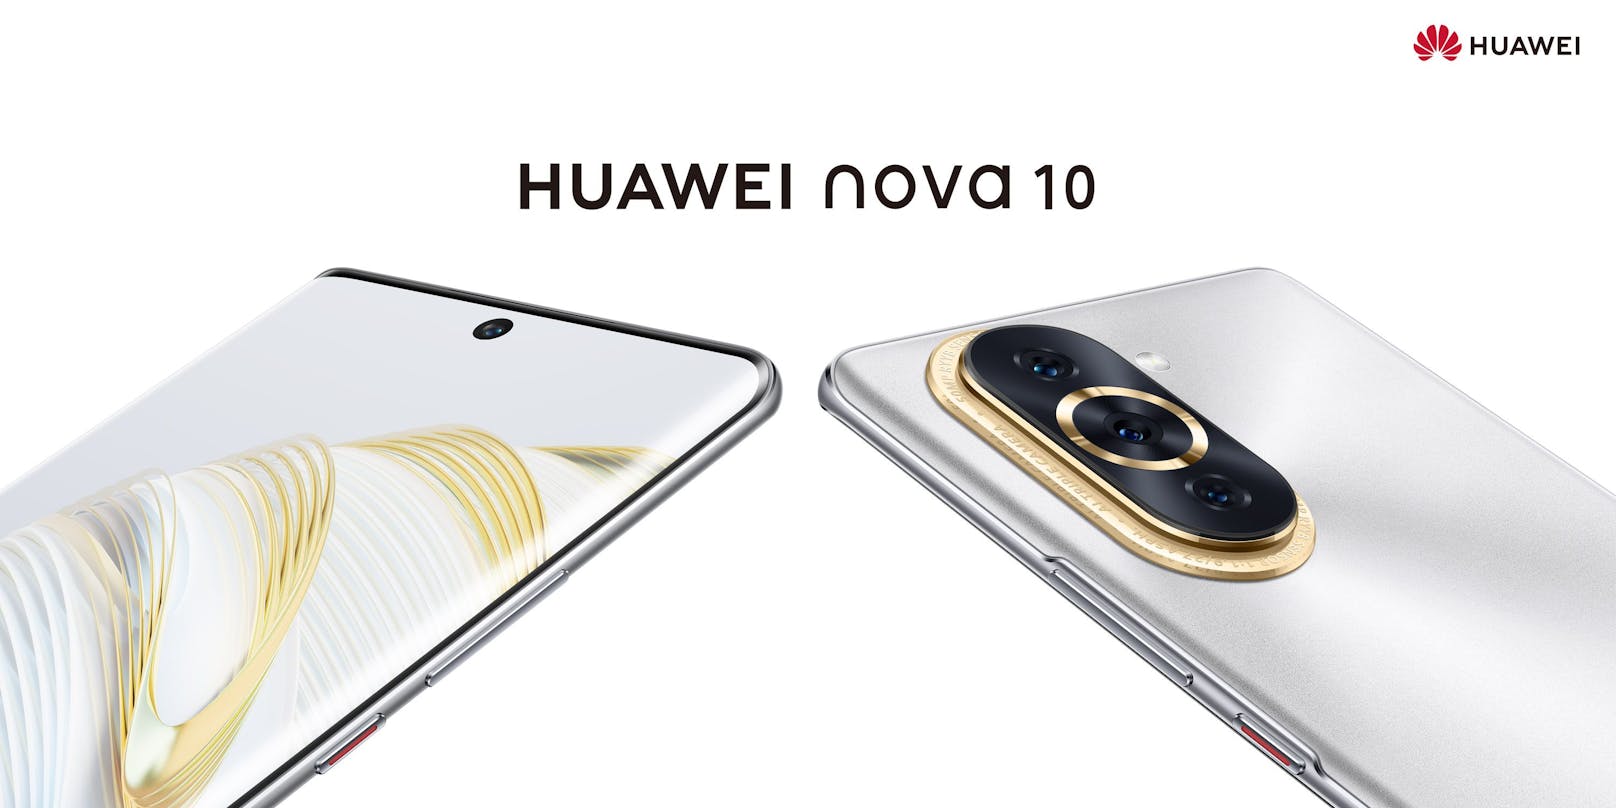 Huawei zaubert neues Watch und neues Handy herbei